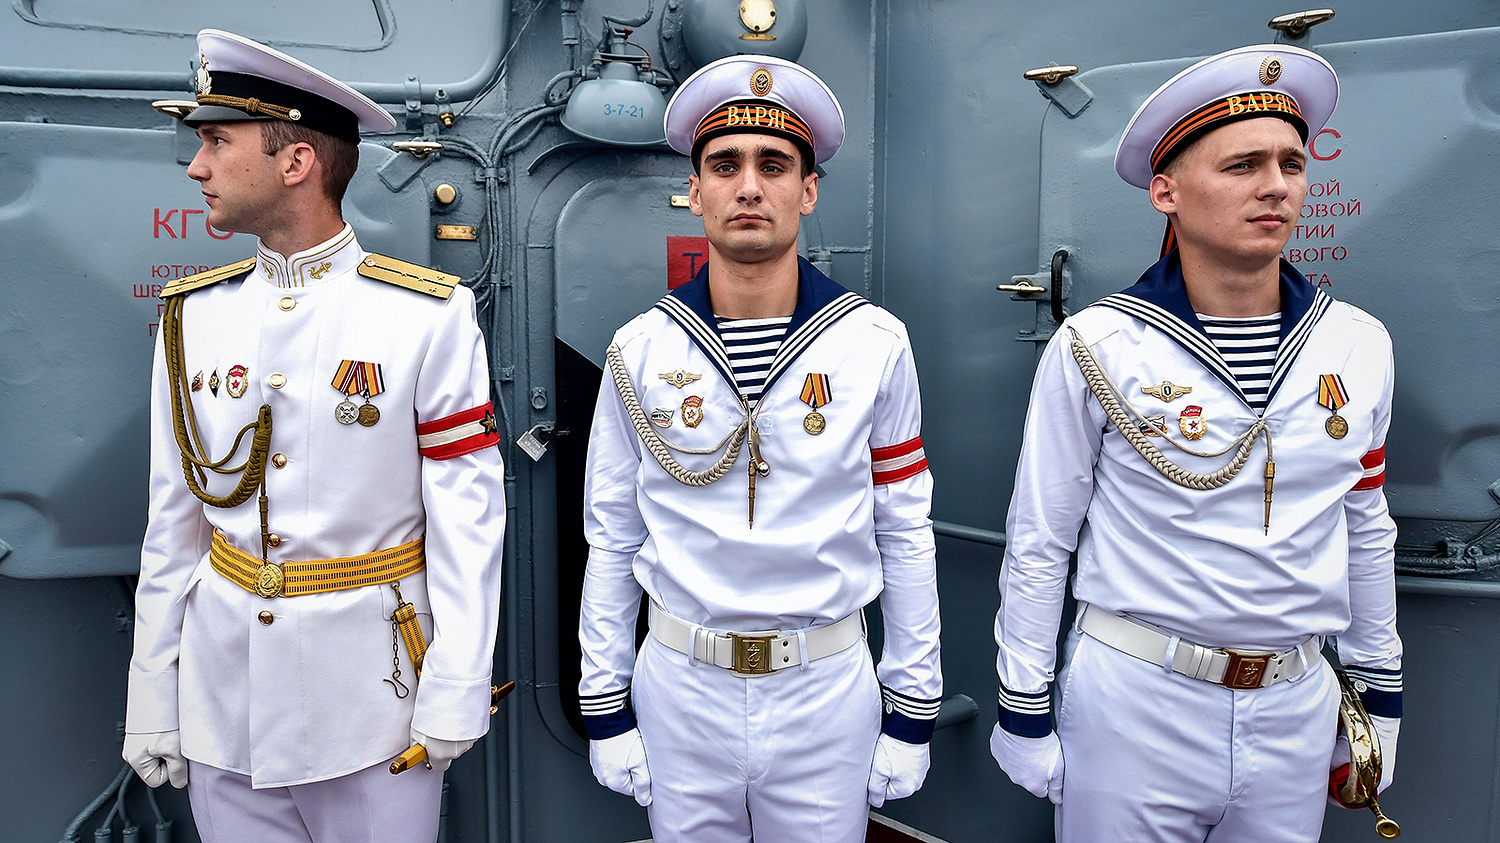 Парадная форма одежды моряков ВМФ России